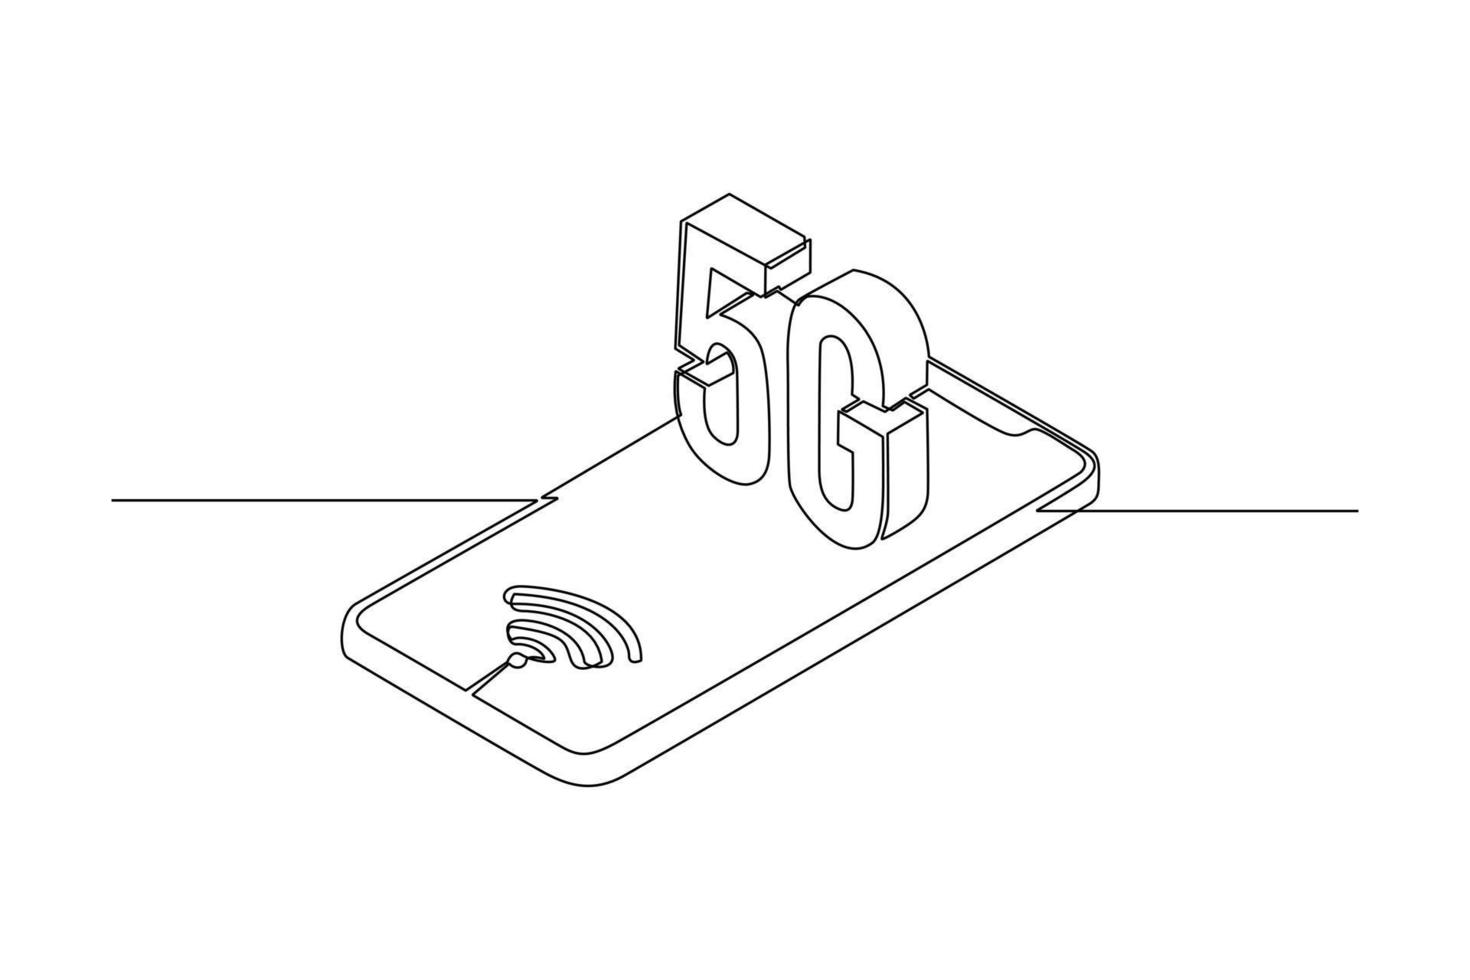 single een lijn tekening 5g smartphone. 5g technologie concept. doorlopend lijn trek ontwerp grafisch vector illustratie.